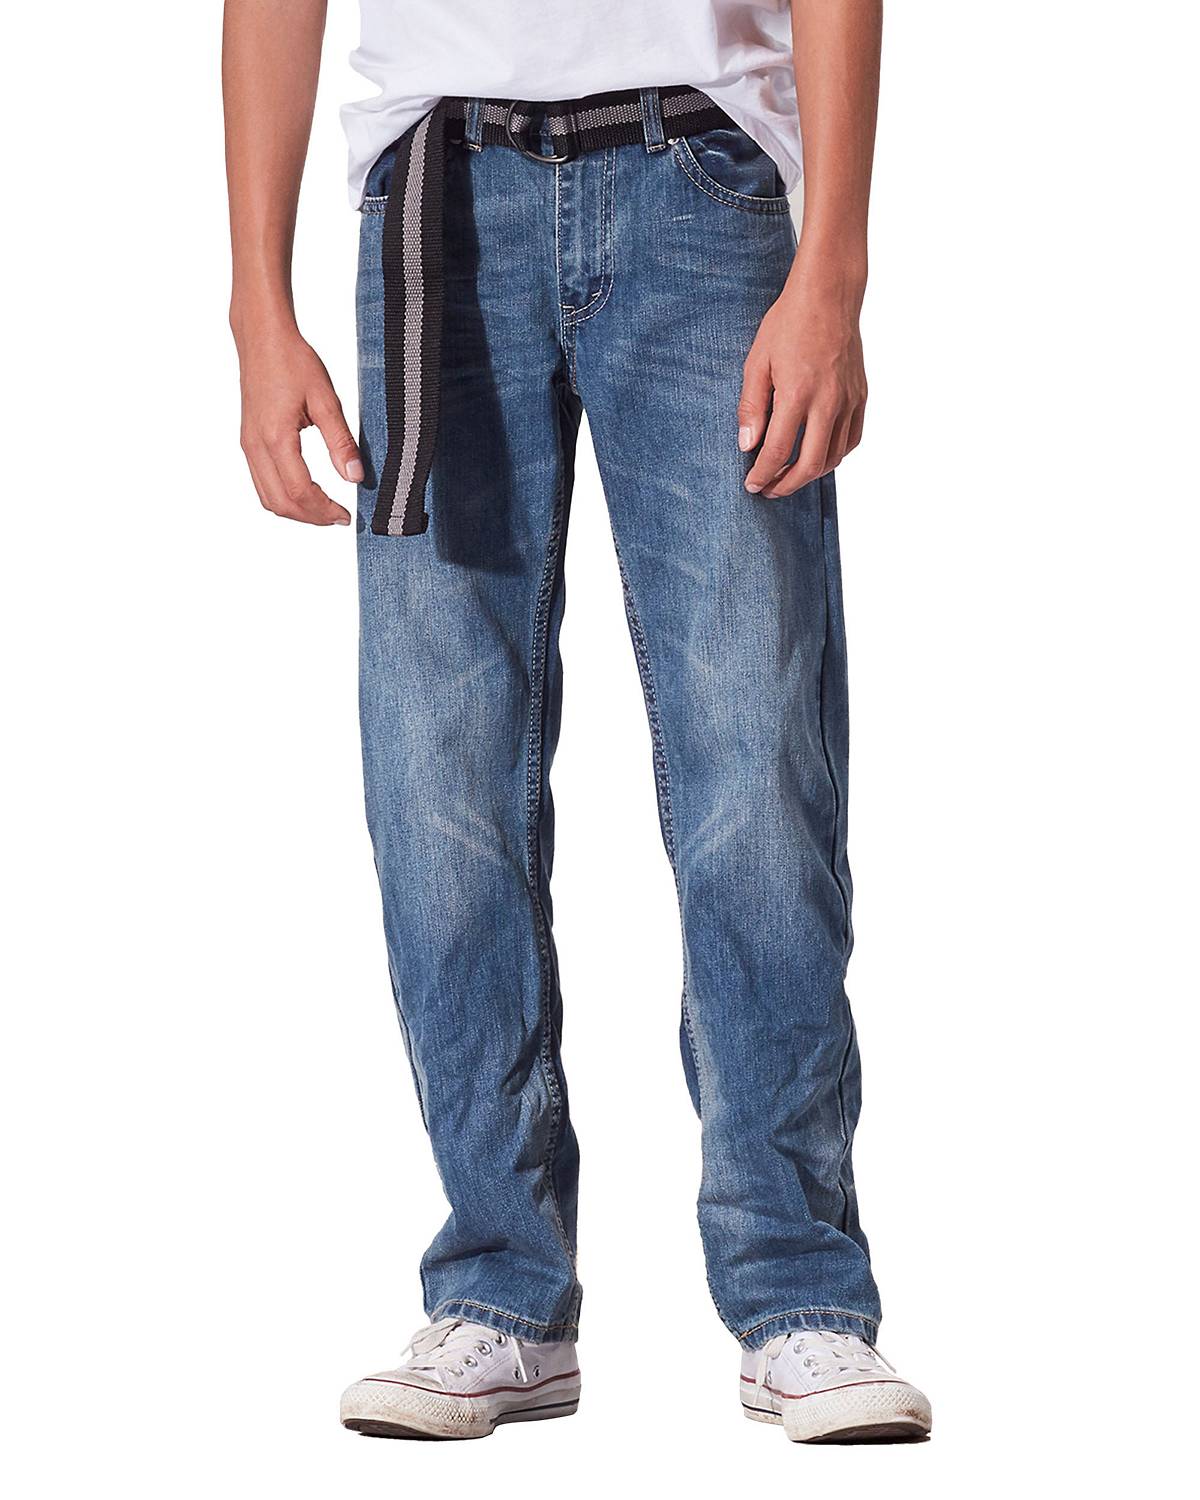 Boy wearing 505™ Regular Fit Jeans